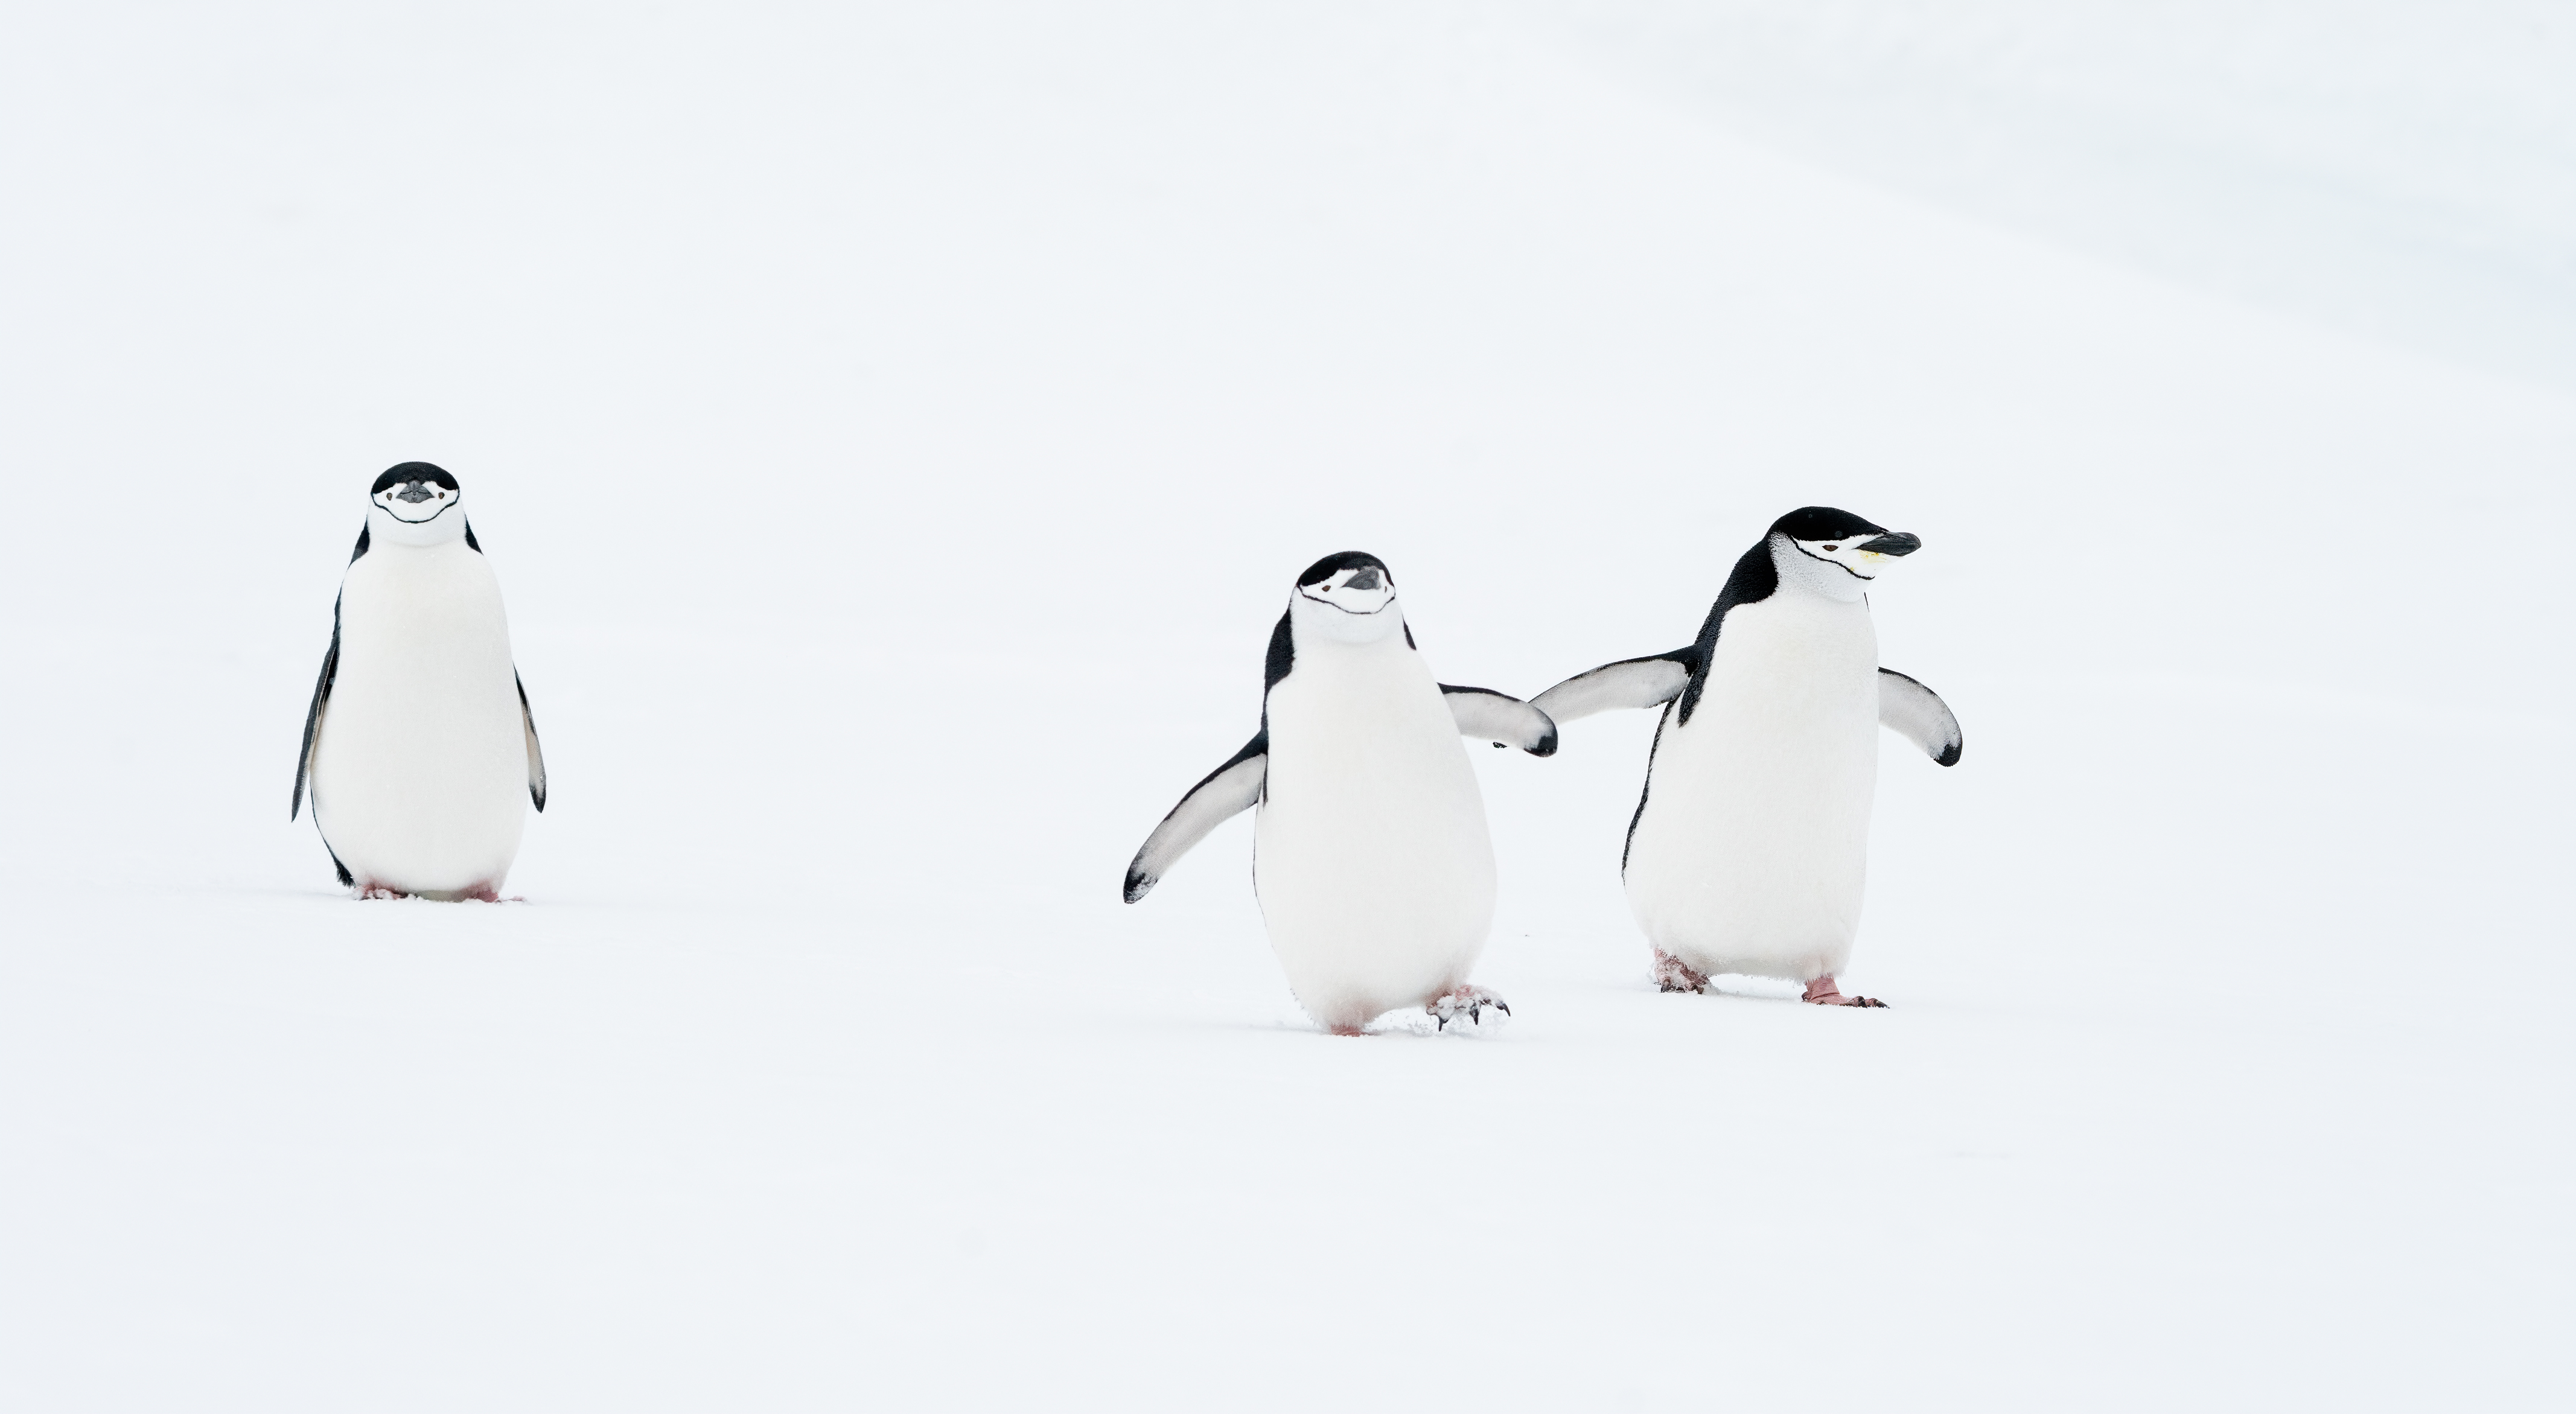 Два пингвина сфотографированы вместе, оставив после себя одинокого пингвина.